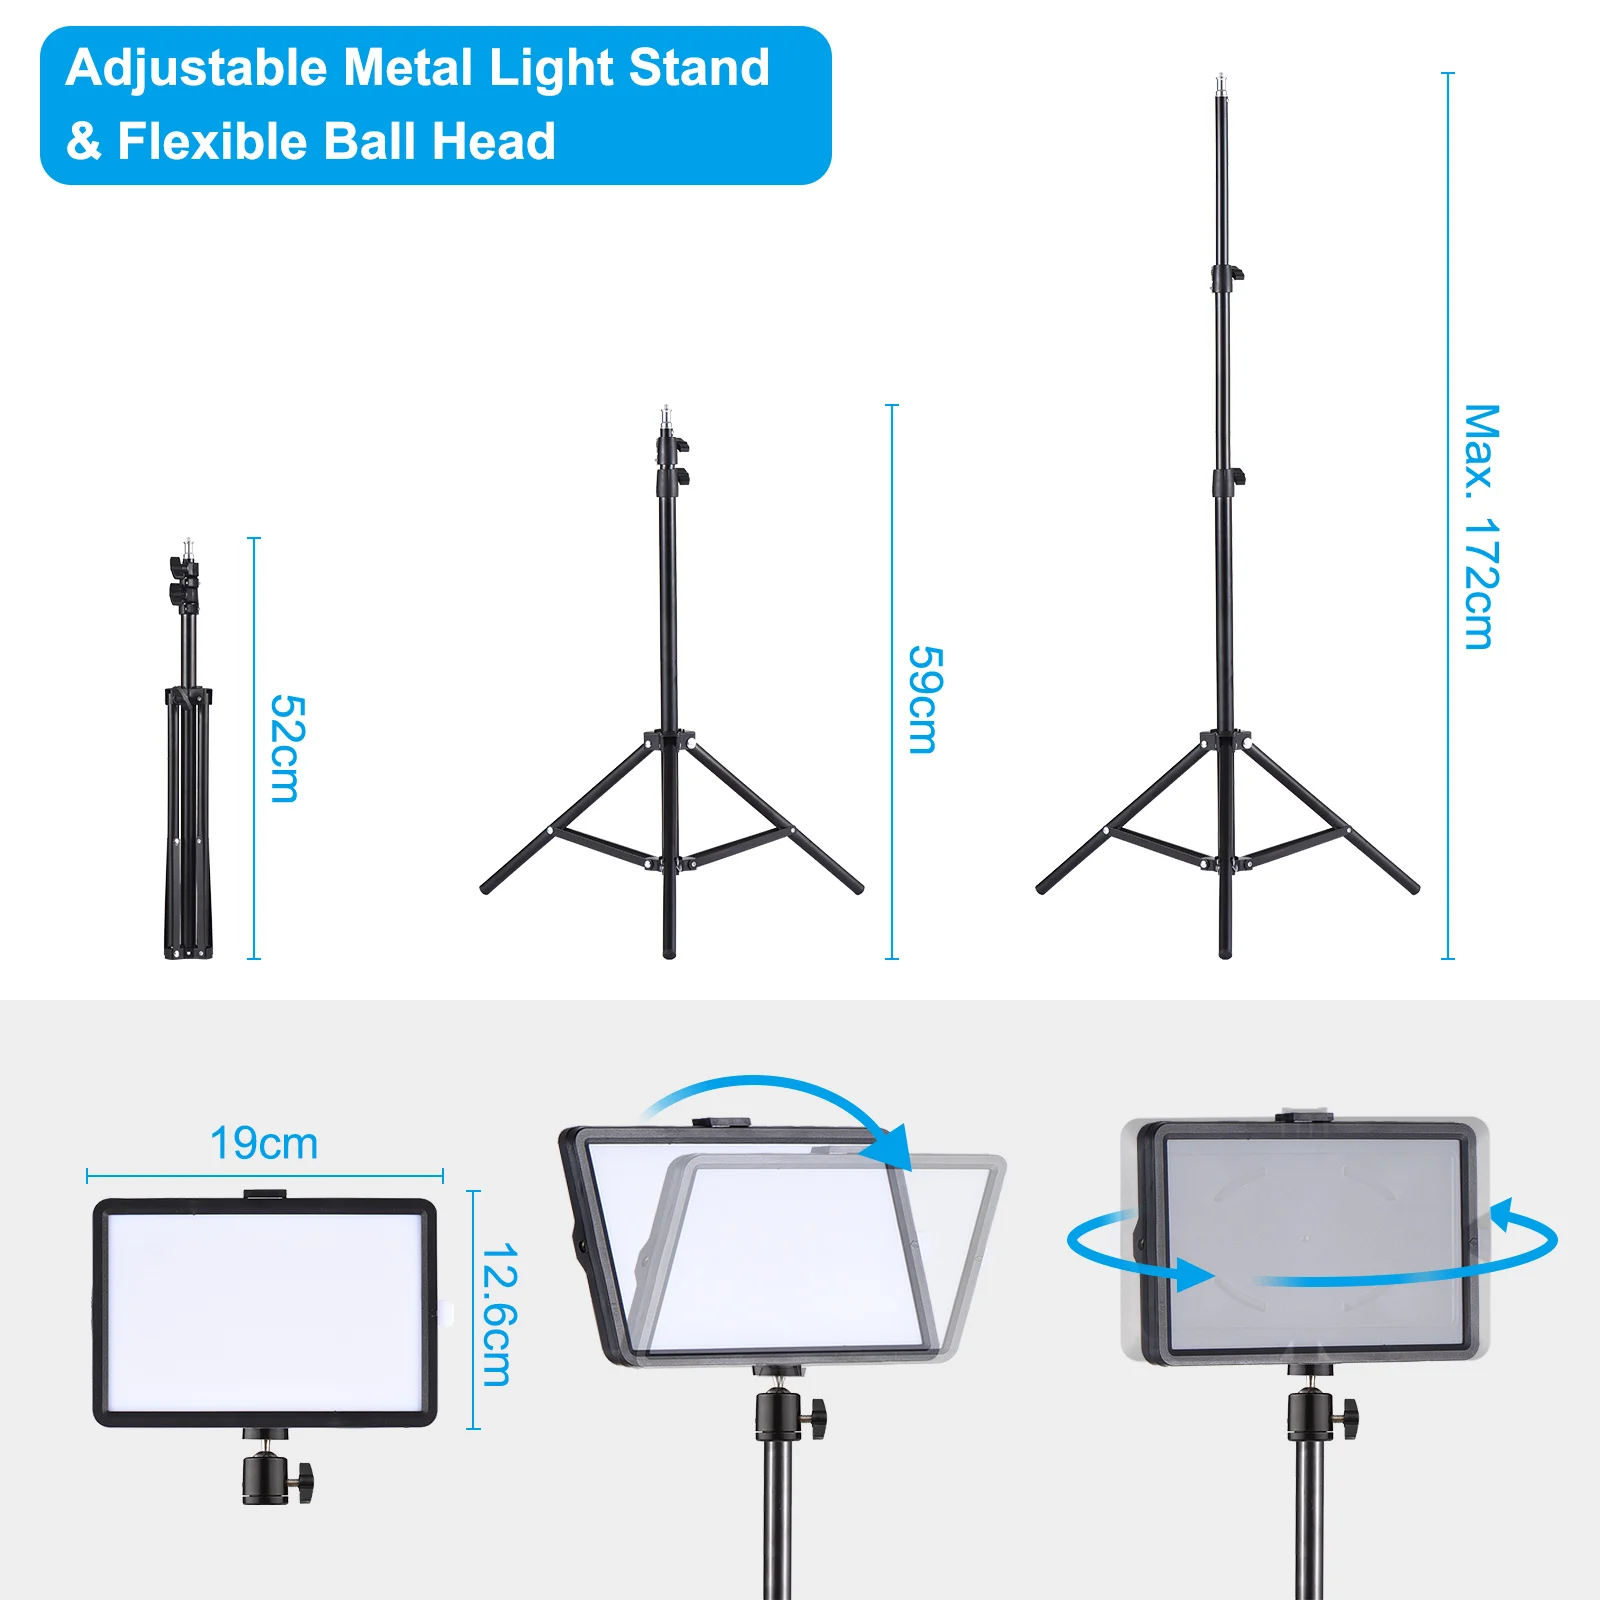 Andoer 2 Комплекта USB LED Video Light Kit с 3200 K-5500 K Заполняющим Светом С Регулируемой Яркостью 67,7 